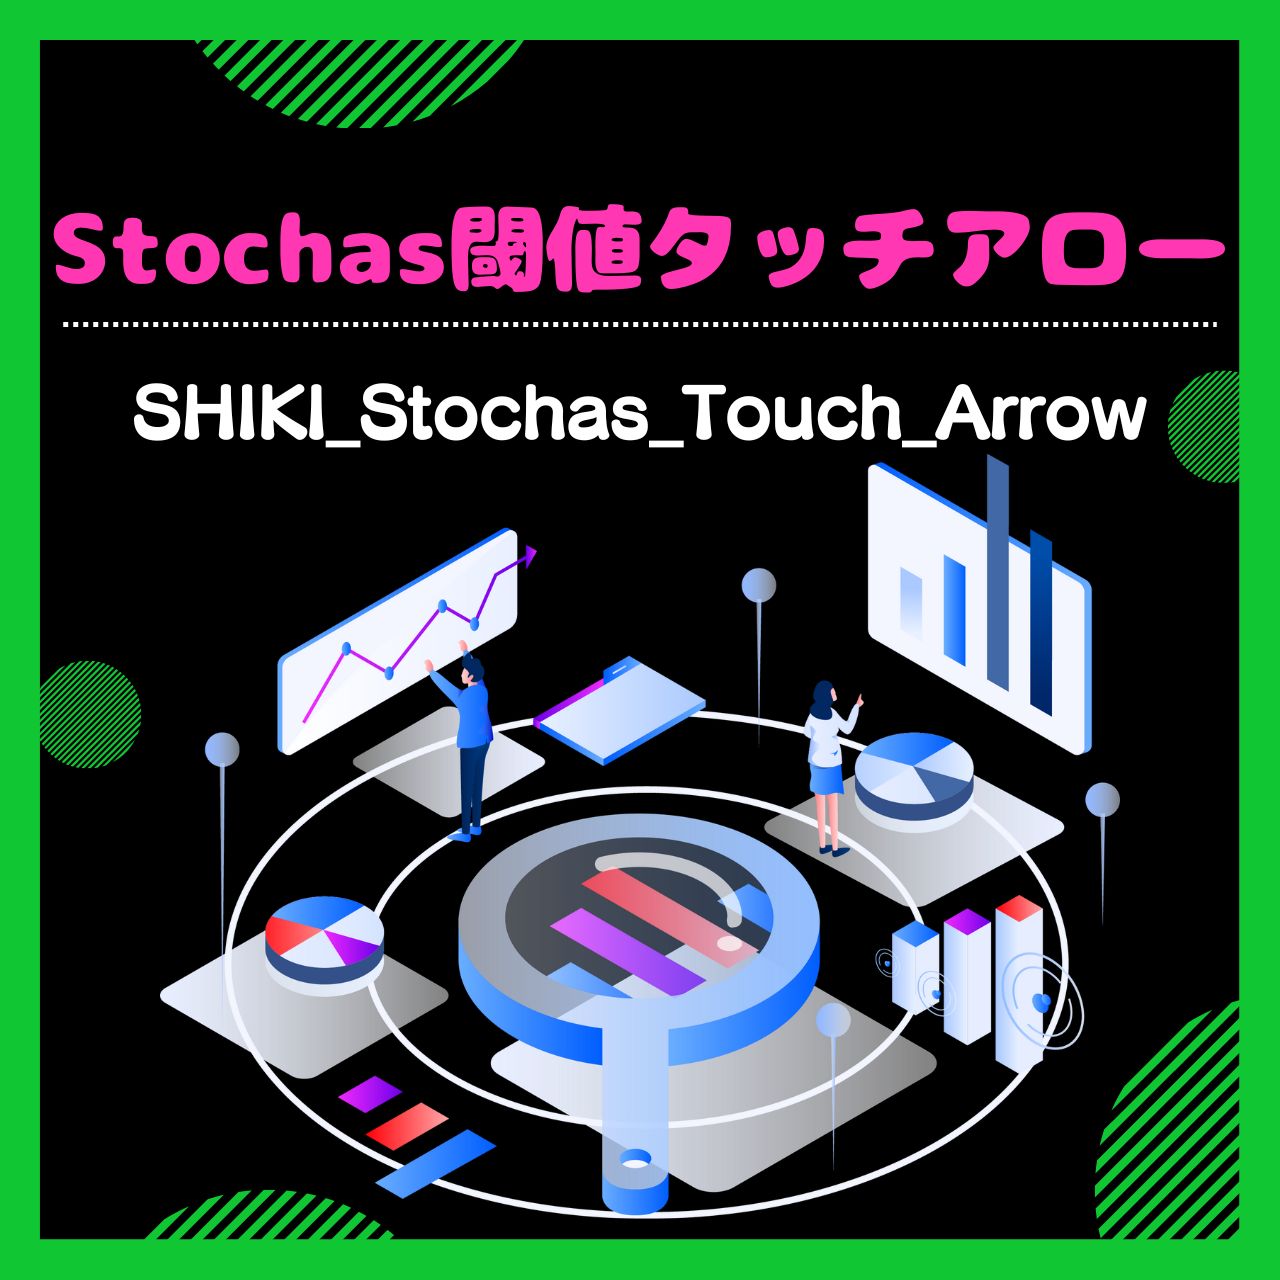 【MTF対応】ストキャスティクス閾値タッチアロー【SHIKI_Stochas_Touch_Arrow】矢印インジケーター